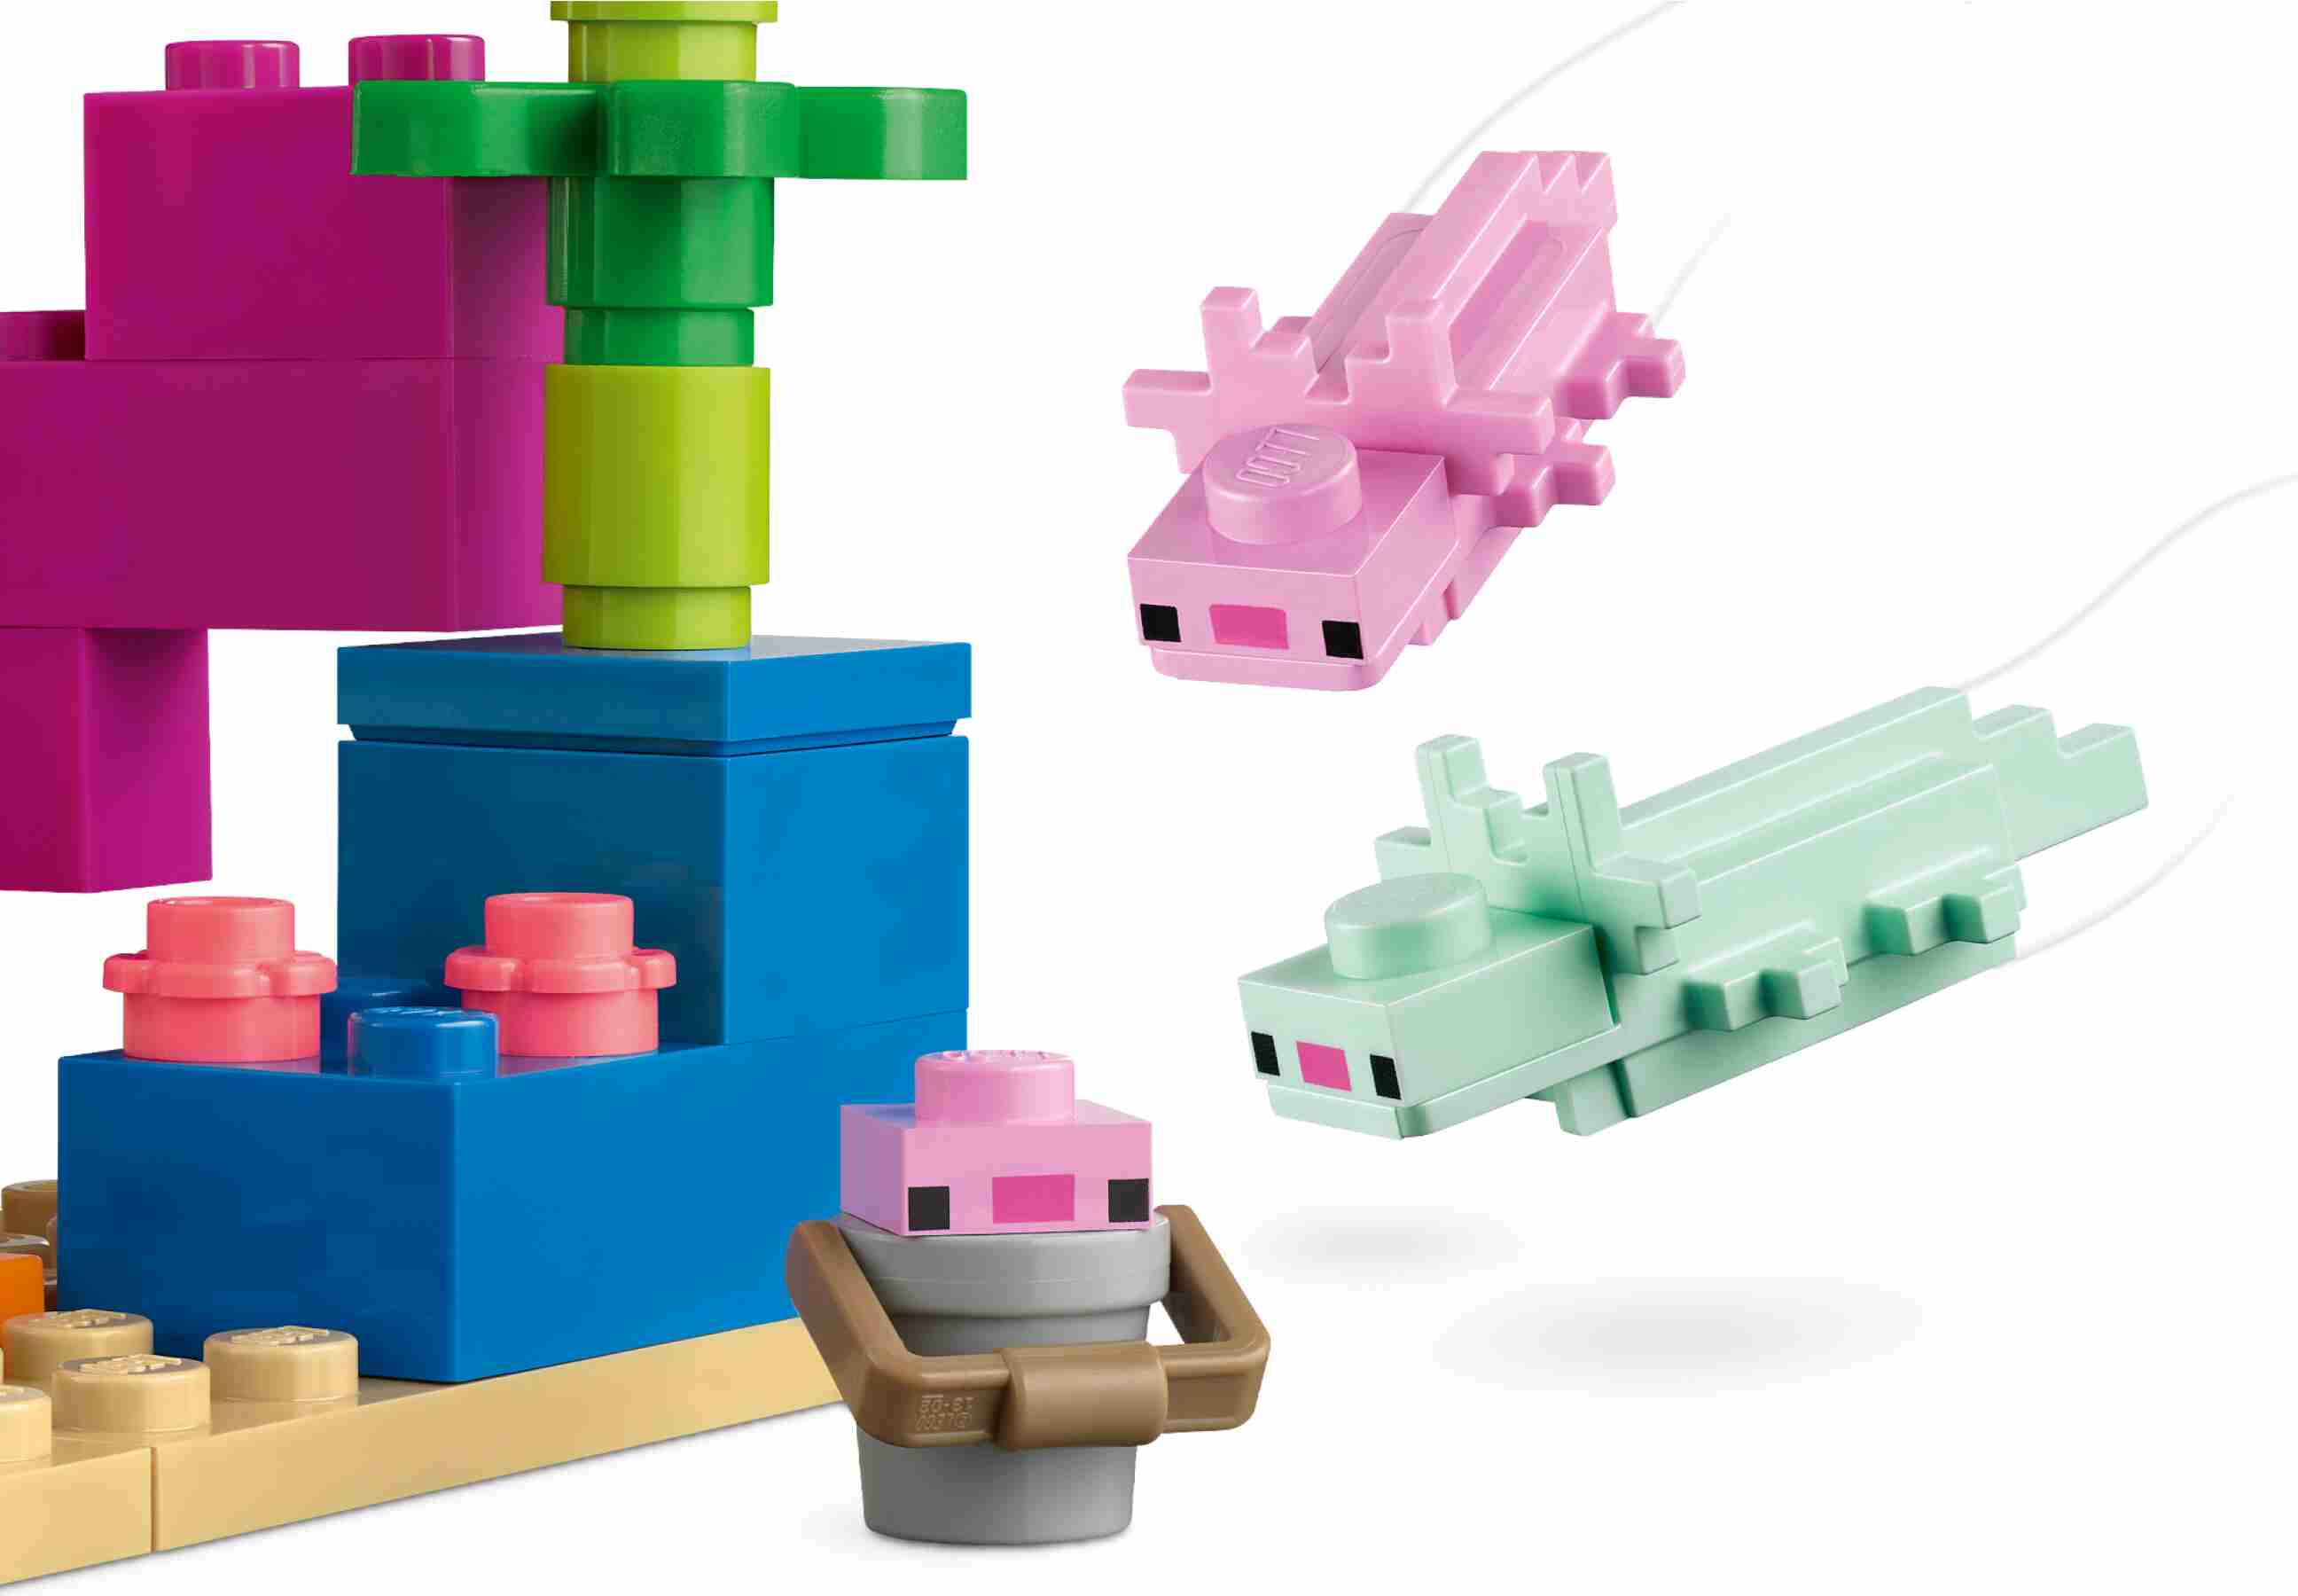 LEGO 21247 Minecraft Das Axolotl-Haus, authentische Minecraft Figuren